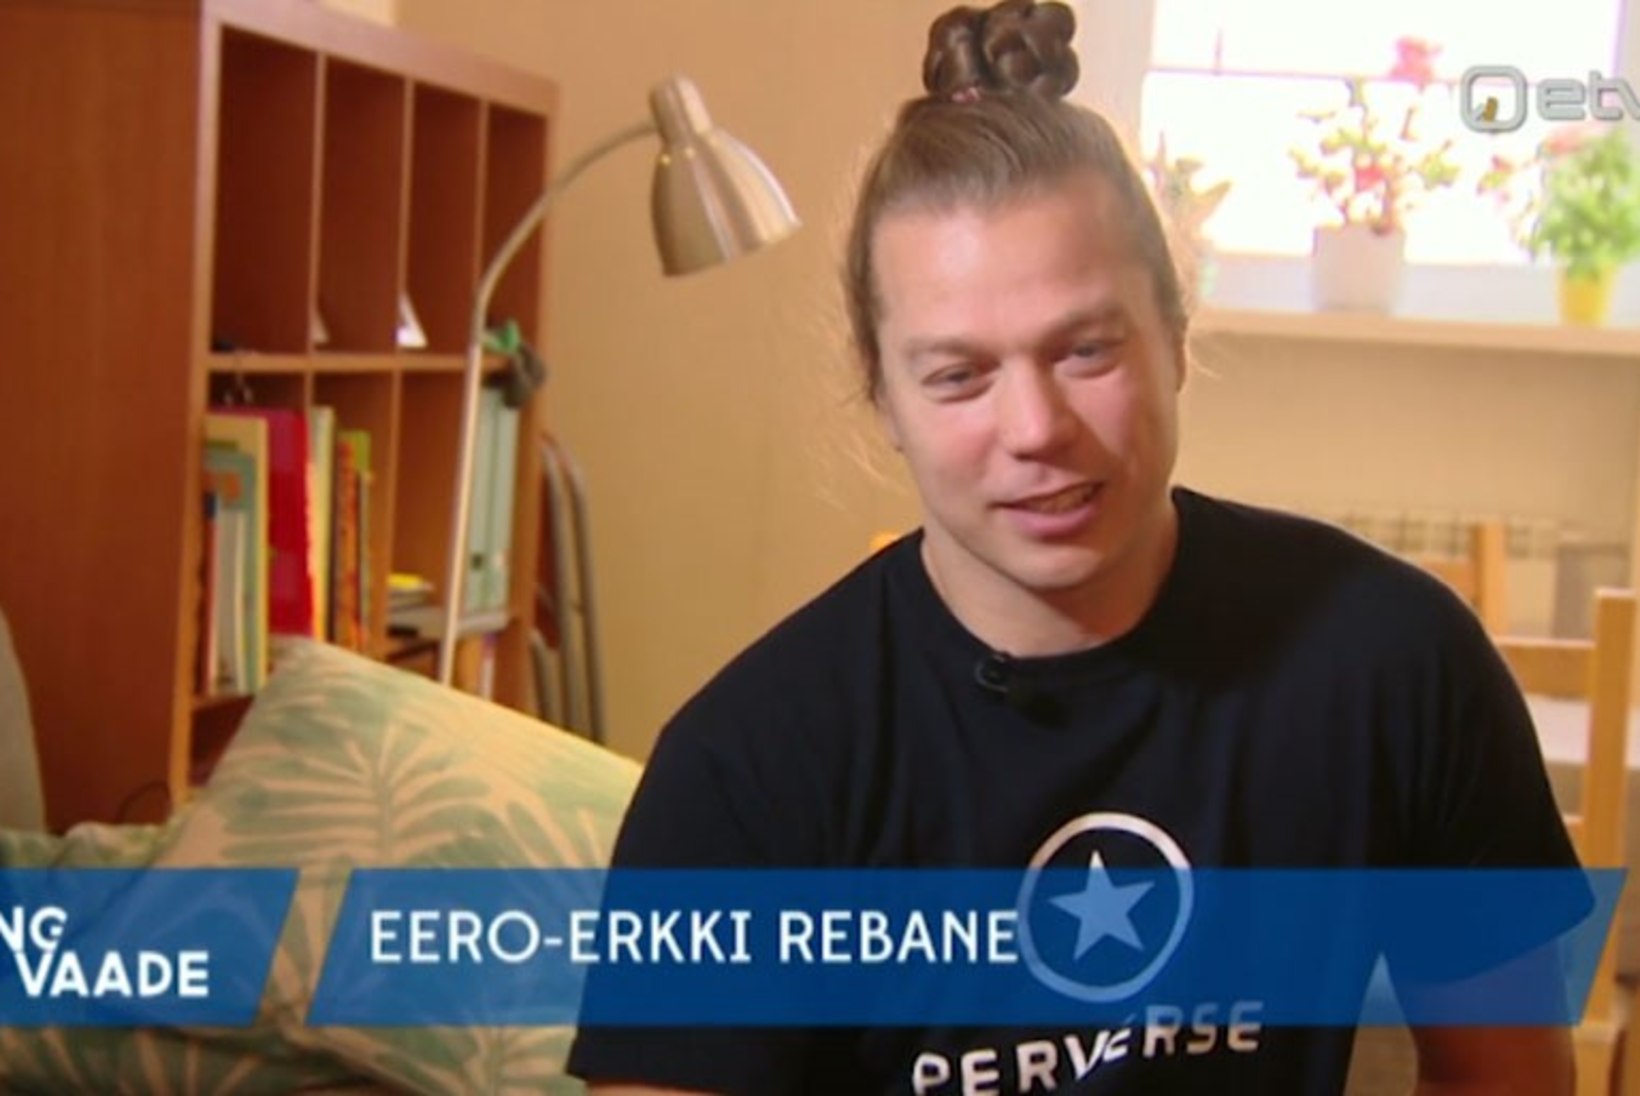 VIDEO | Treeningu käigus ratastooli jäänud Eero-Erkki Rebane soovib saada tagasi koju